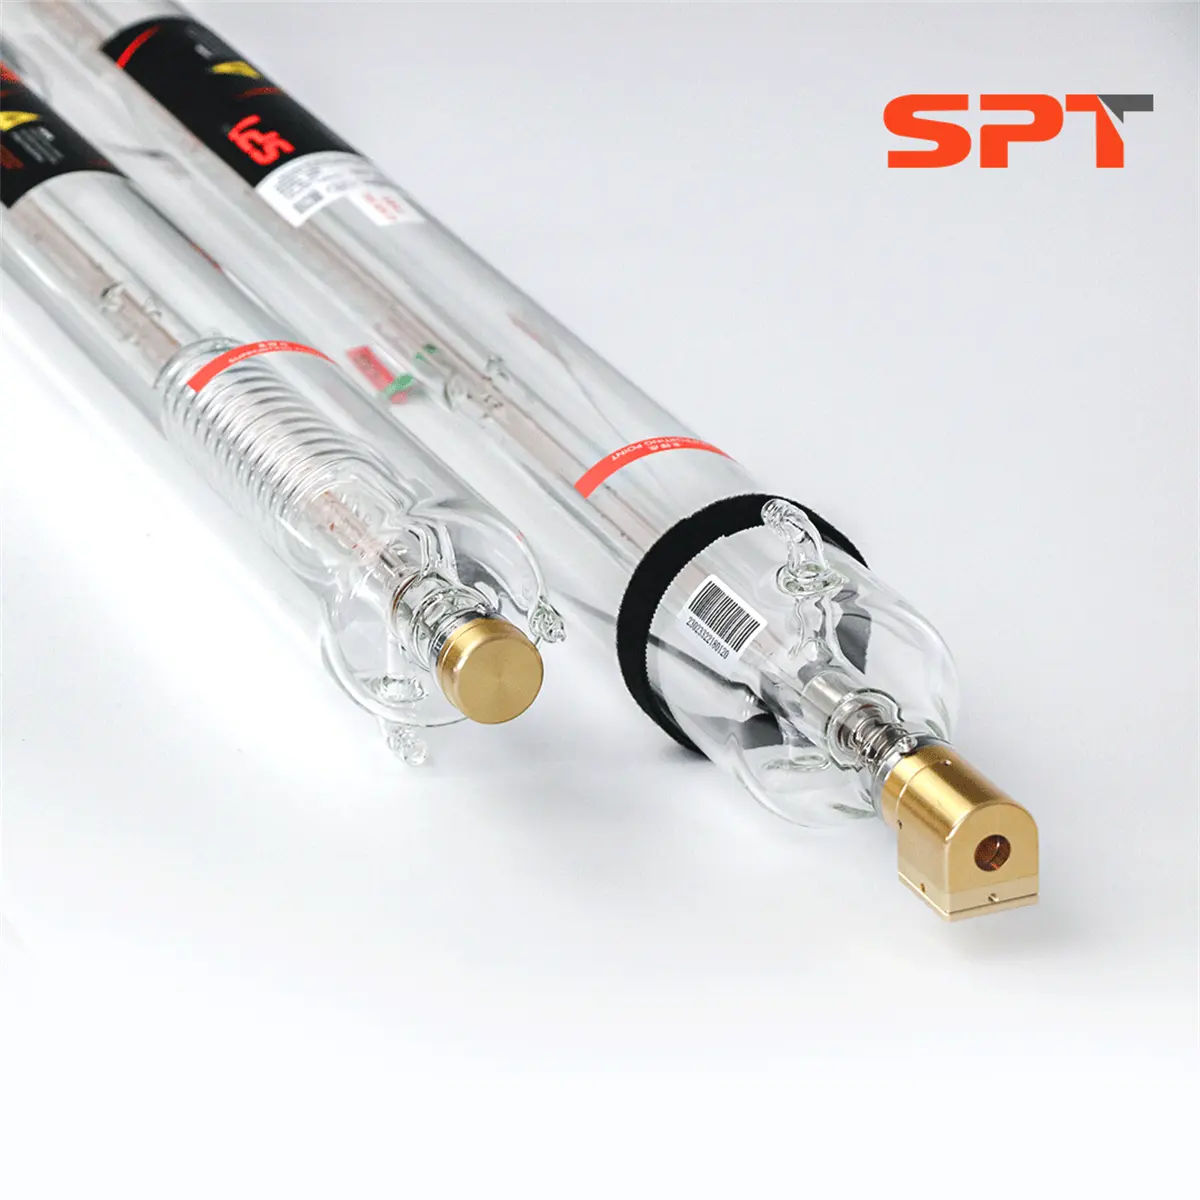 SPT высокомощная 100 Вт CO2 лазерная трубка с красной указкой для лазерной резки неметаллических материалов, таких как акрил/МДФ